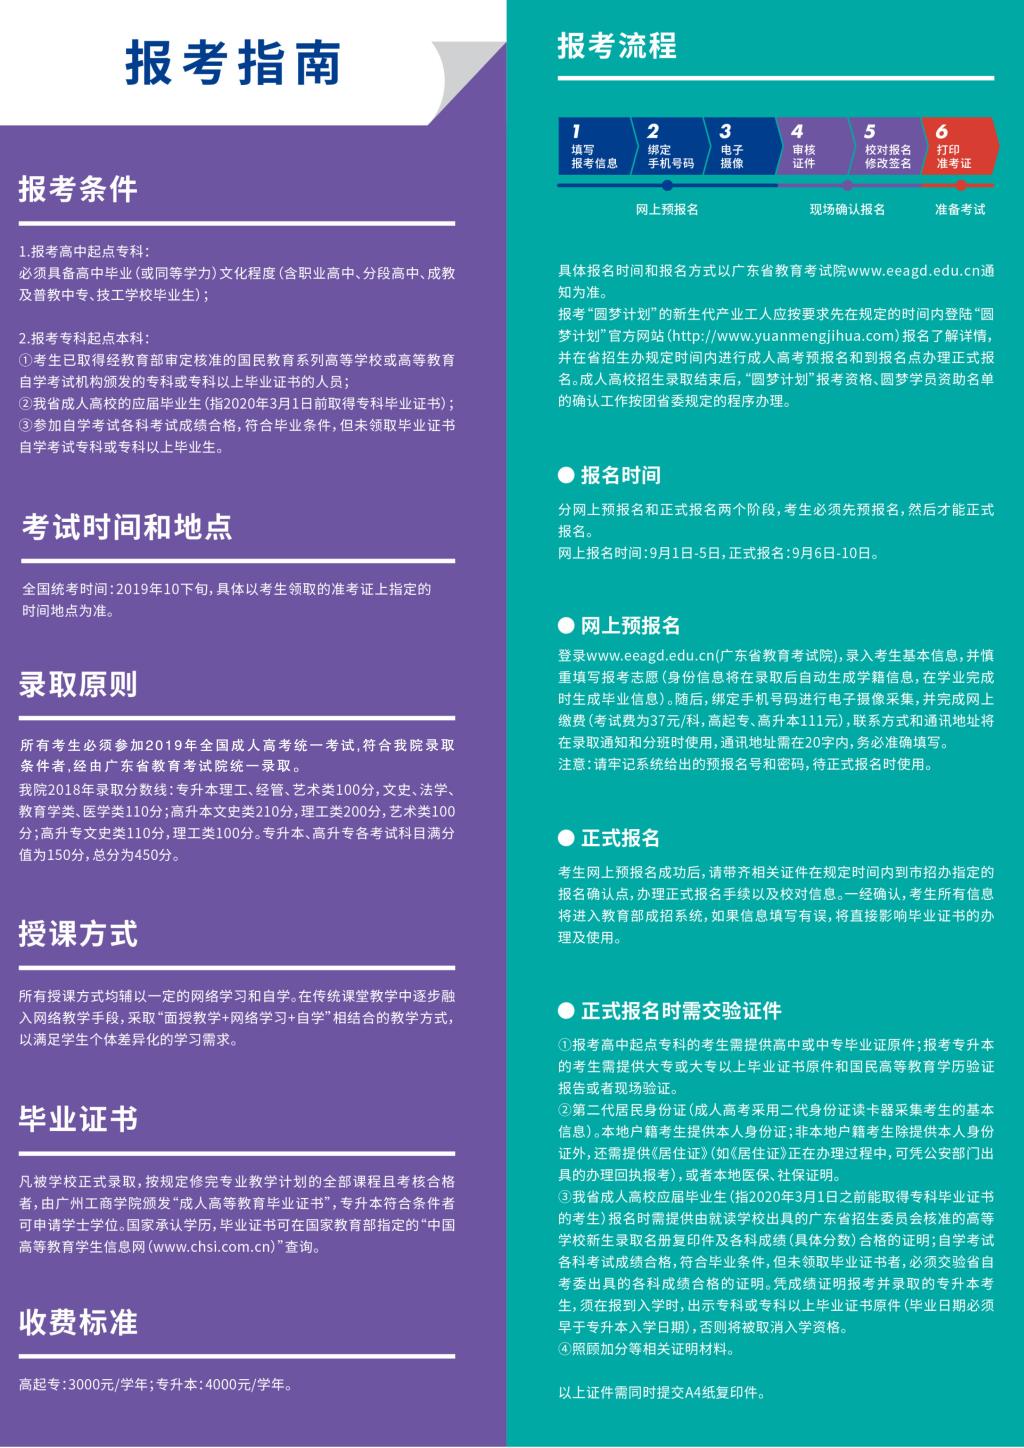 广州工商学院2019年成人教育招生简章